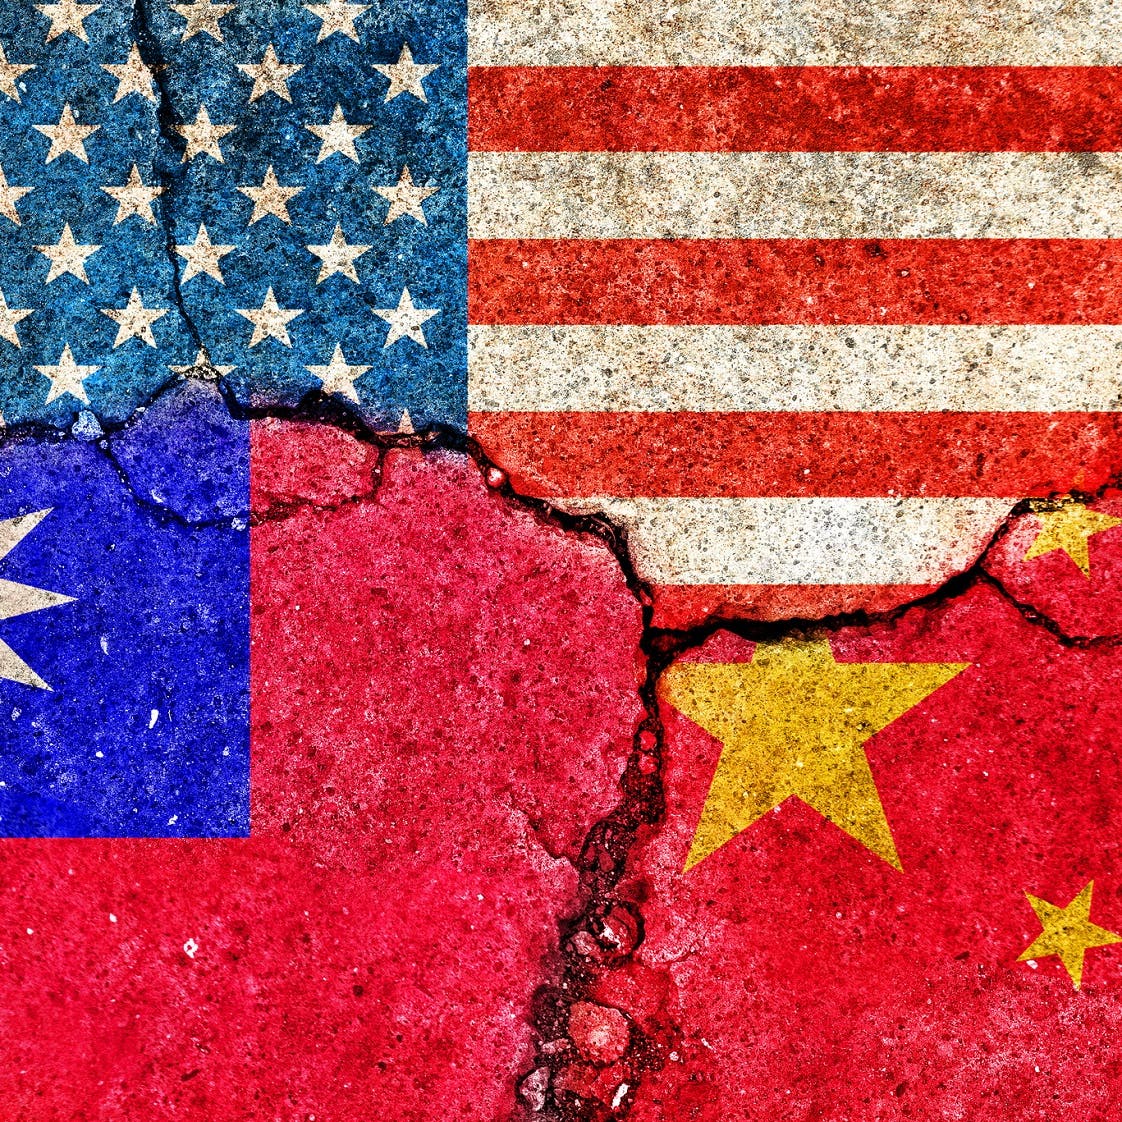 الصين عن مشروع القانون الأميركي حول تايوان: رسائل خطيرة